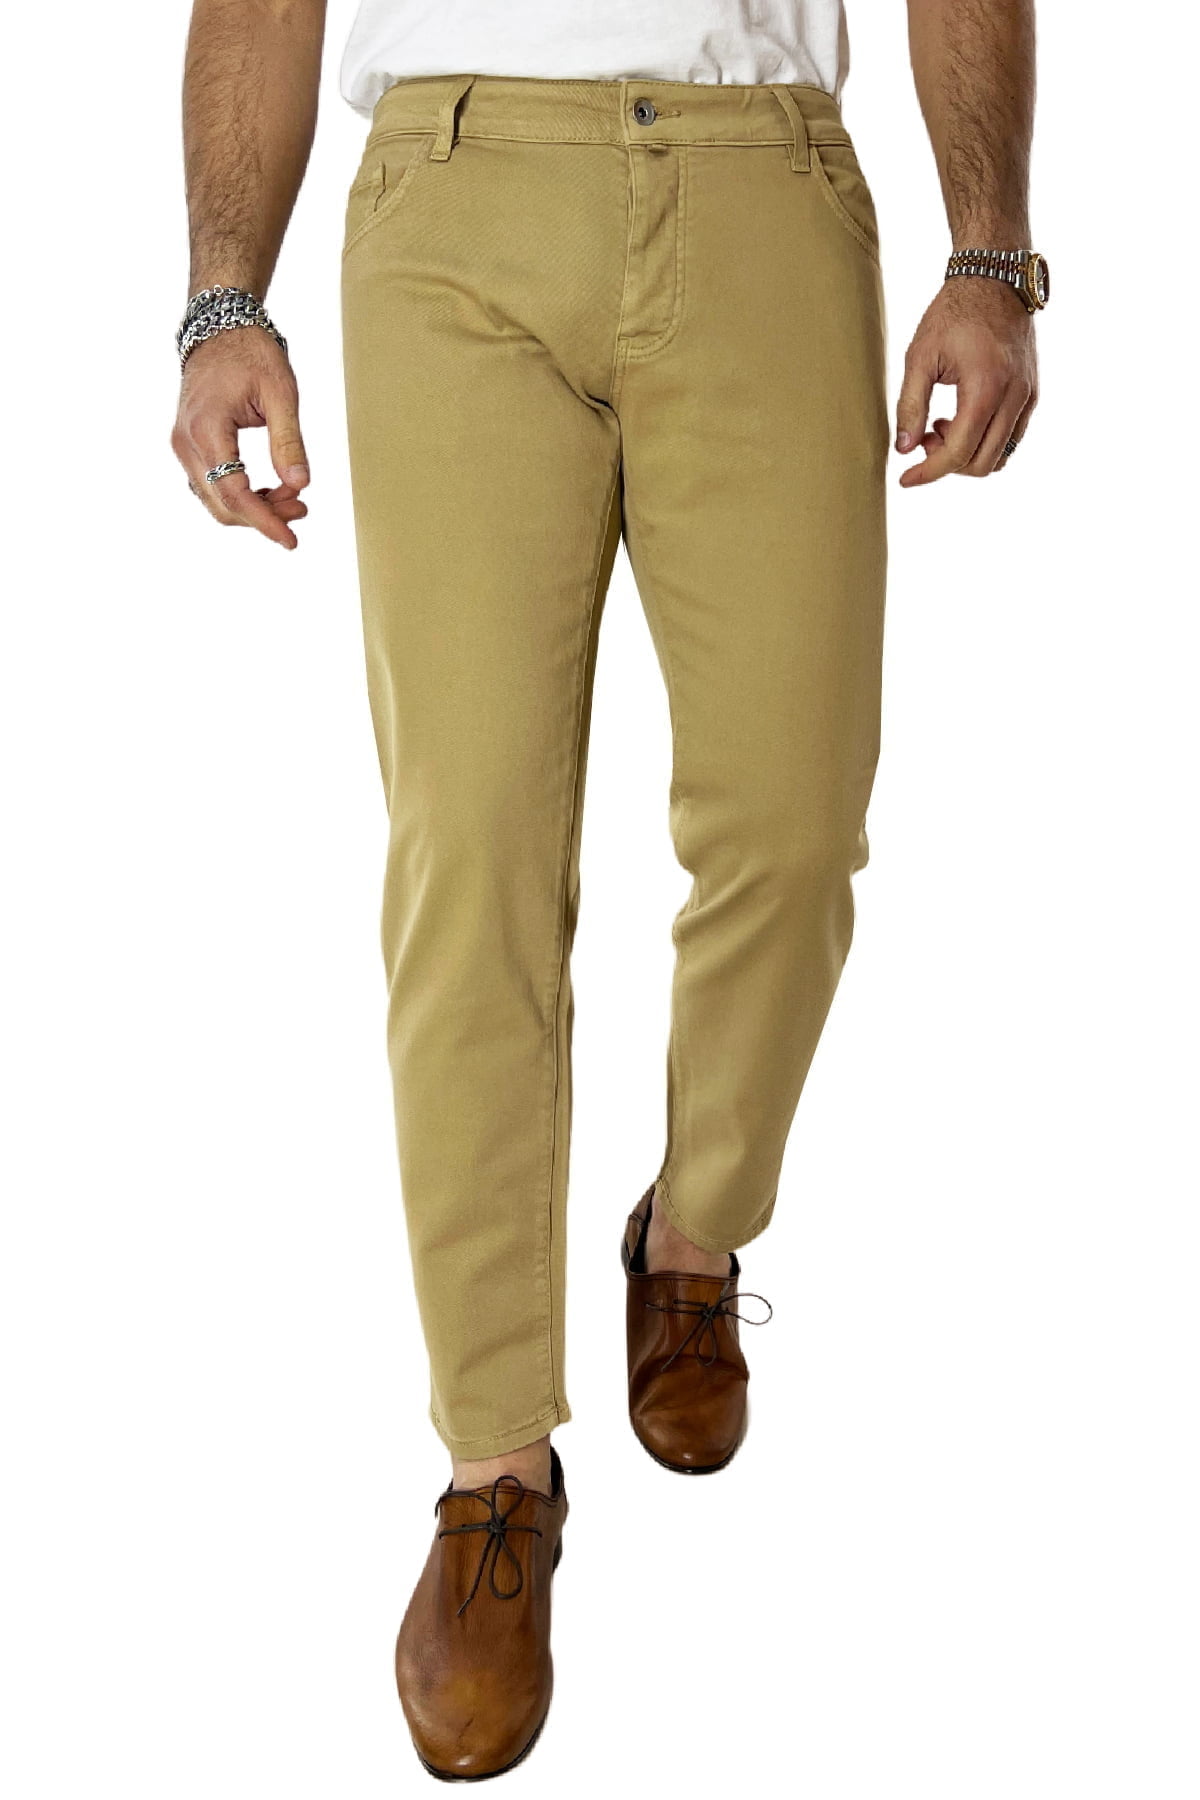 Jeans uomo cammello tinta unita modello 5 tasche slim fit estivo made in italy